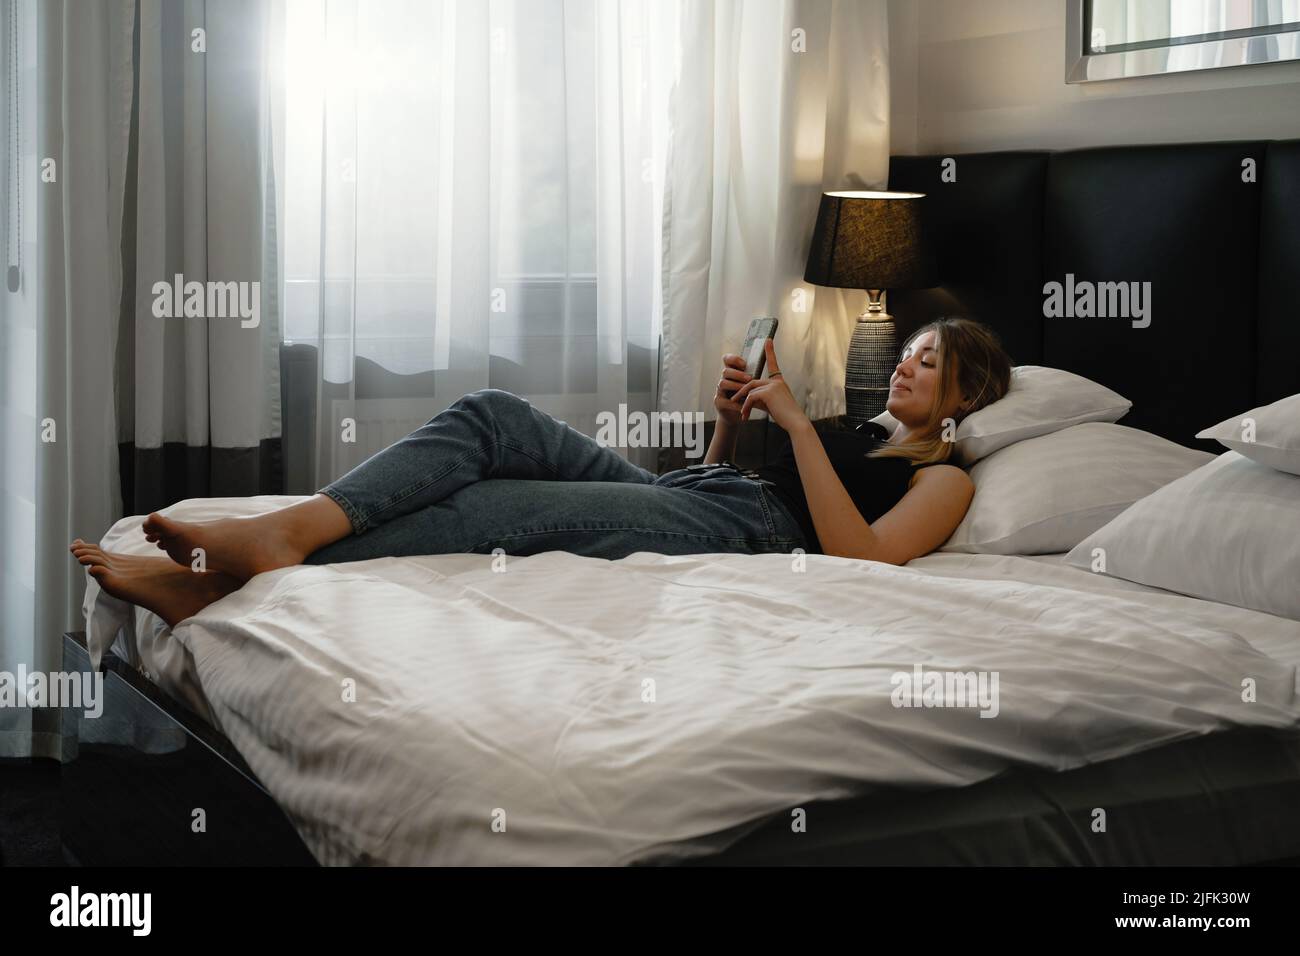 Jeune femme détendue dans le lit de la chambre d'hôtel regardant le smartphone, la planification de la journée, le chat, la lecture. Femme qui se repose dans un hôtel moderne pendant son voyage Banque D'Images